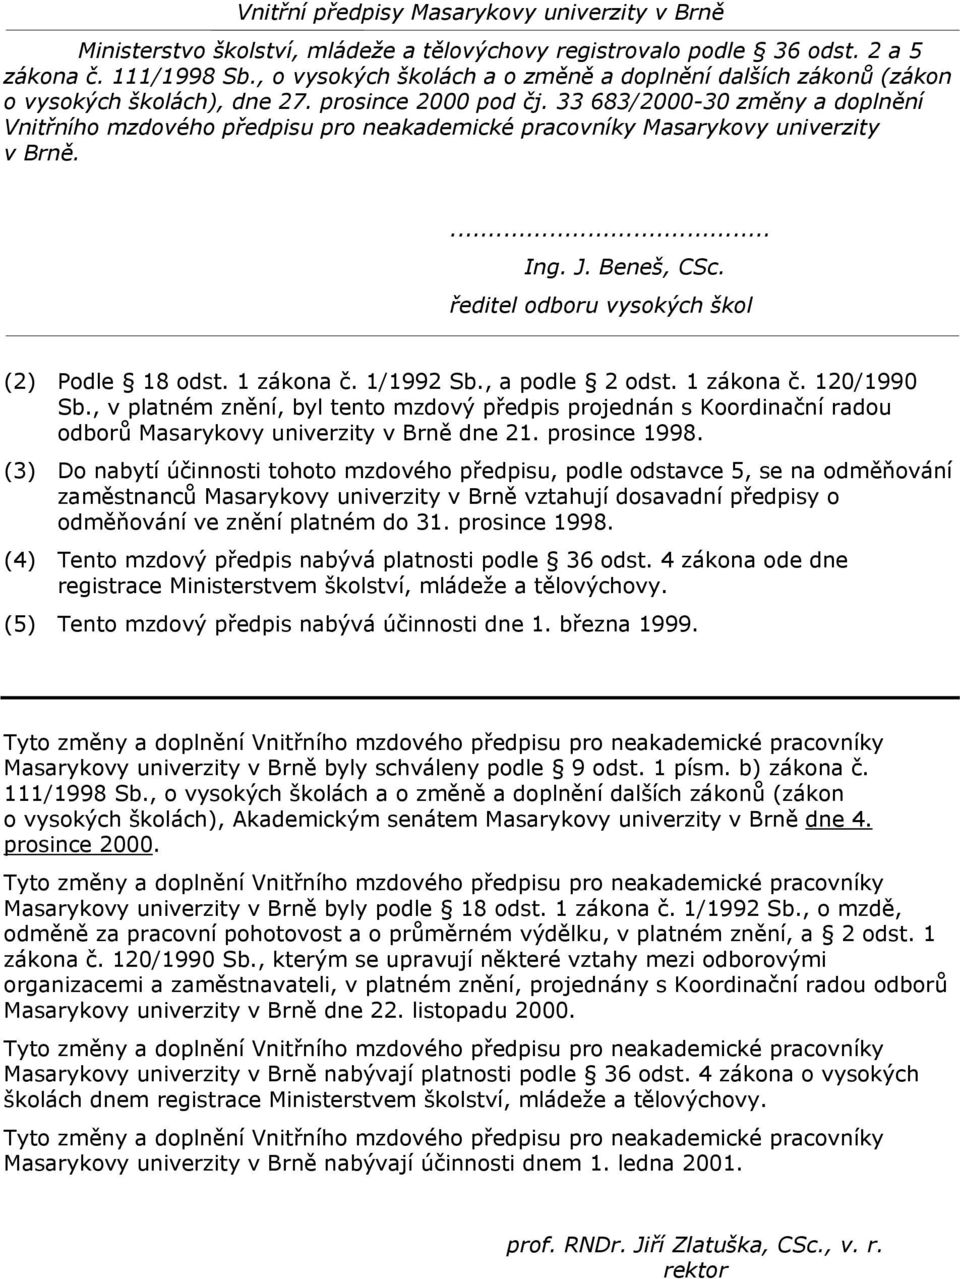 (3) Do nabytí účinnosti tohoto mzdového předpisu, podle odstavce 5, se na odměňování zaměstnanců Masarykovy univerzity v Brně vztahují dosavadní předpisy o odměňování ve znění platném do 31.